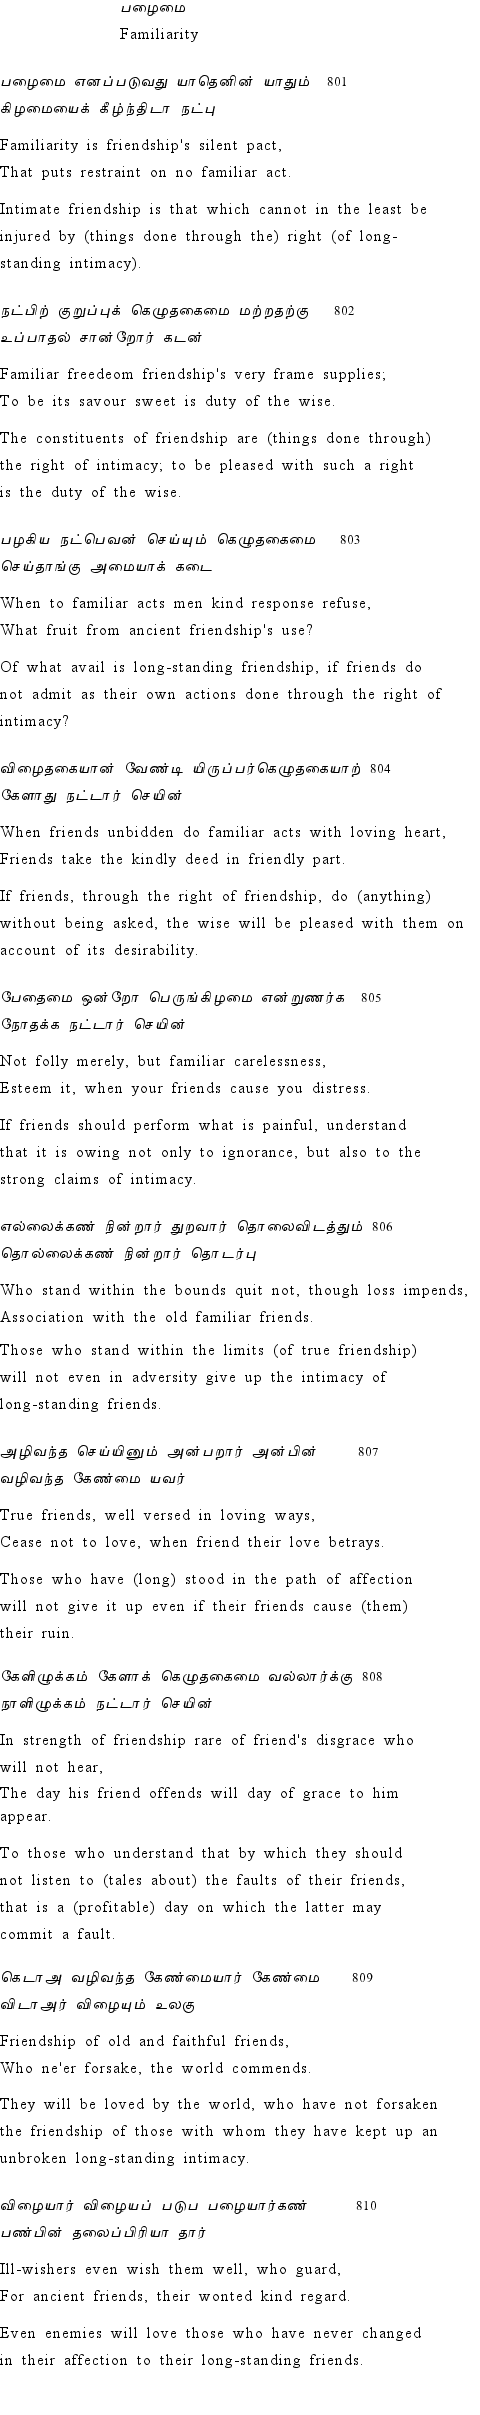 Text of Adhikaram 81